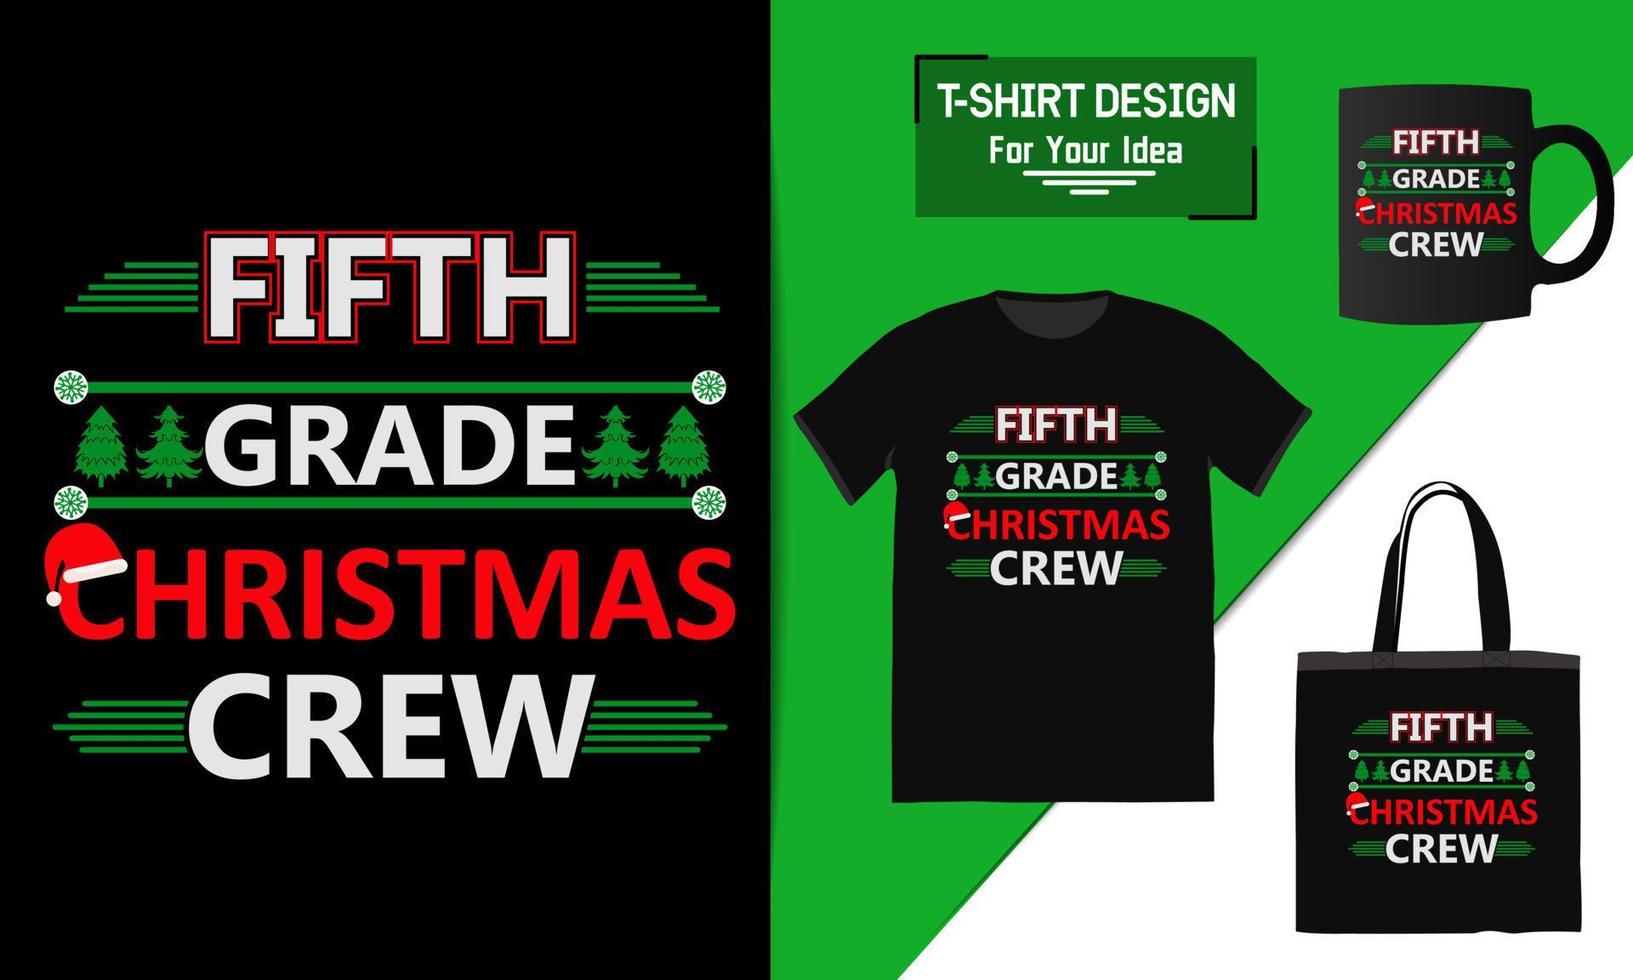 femte klass julbesättning jul färgglad t-shirt designdesign, handskriven modern redo för tryck vektor